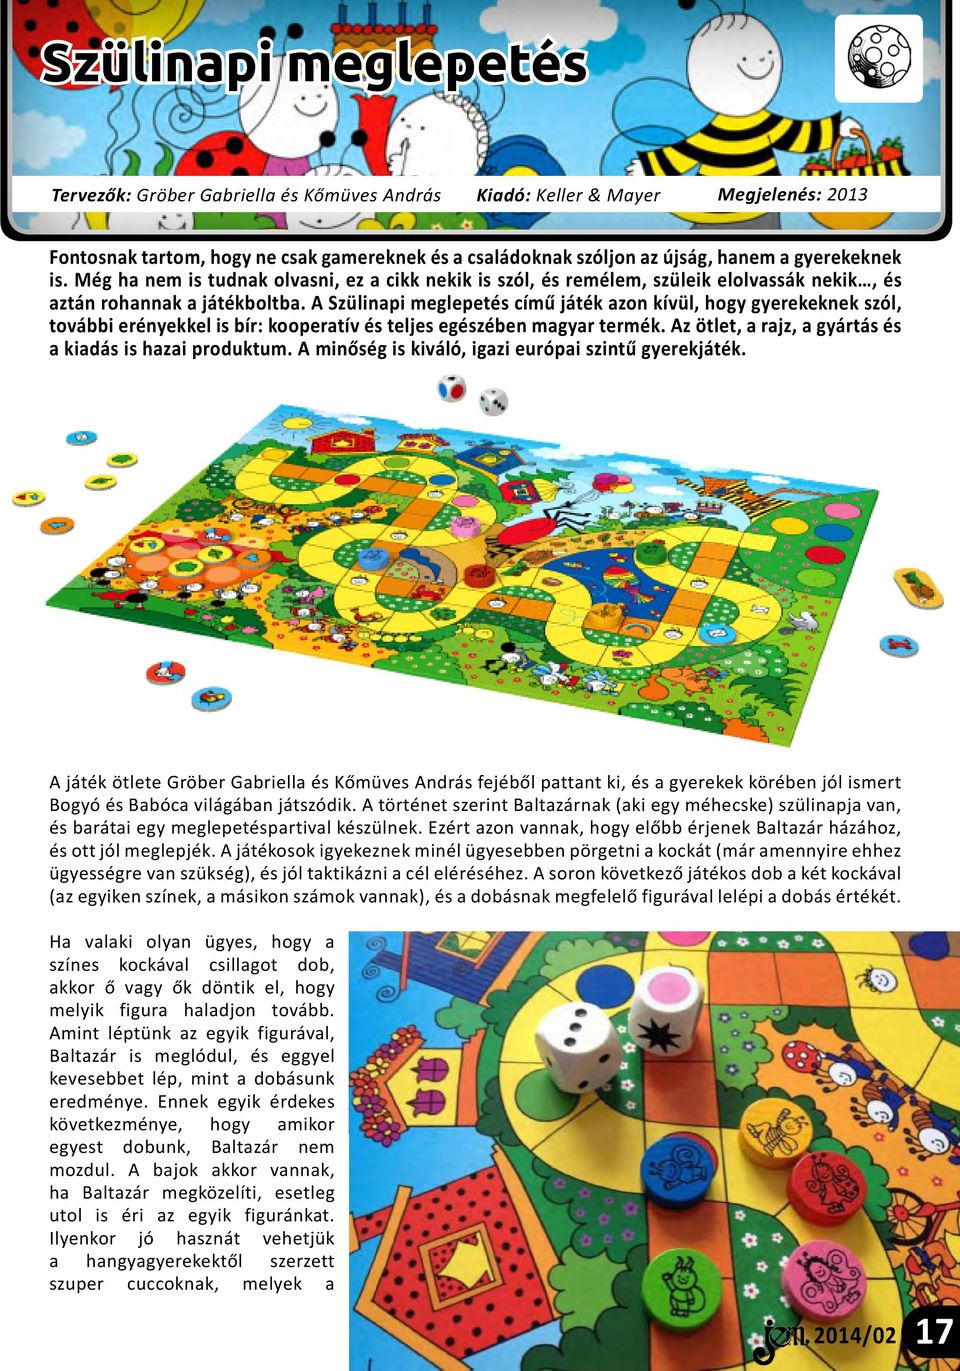 A Szülinapi meglepetés című játék azon kívül, hogy gyerekeknek szól, további erényekkel is bír: kooperatív és teljes egészében magyar termék.